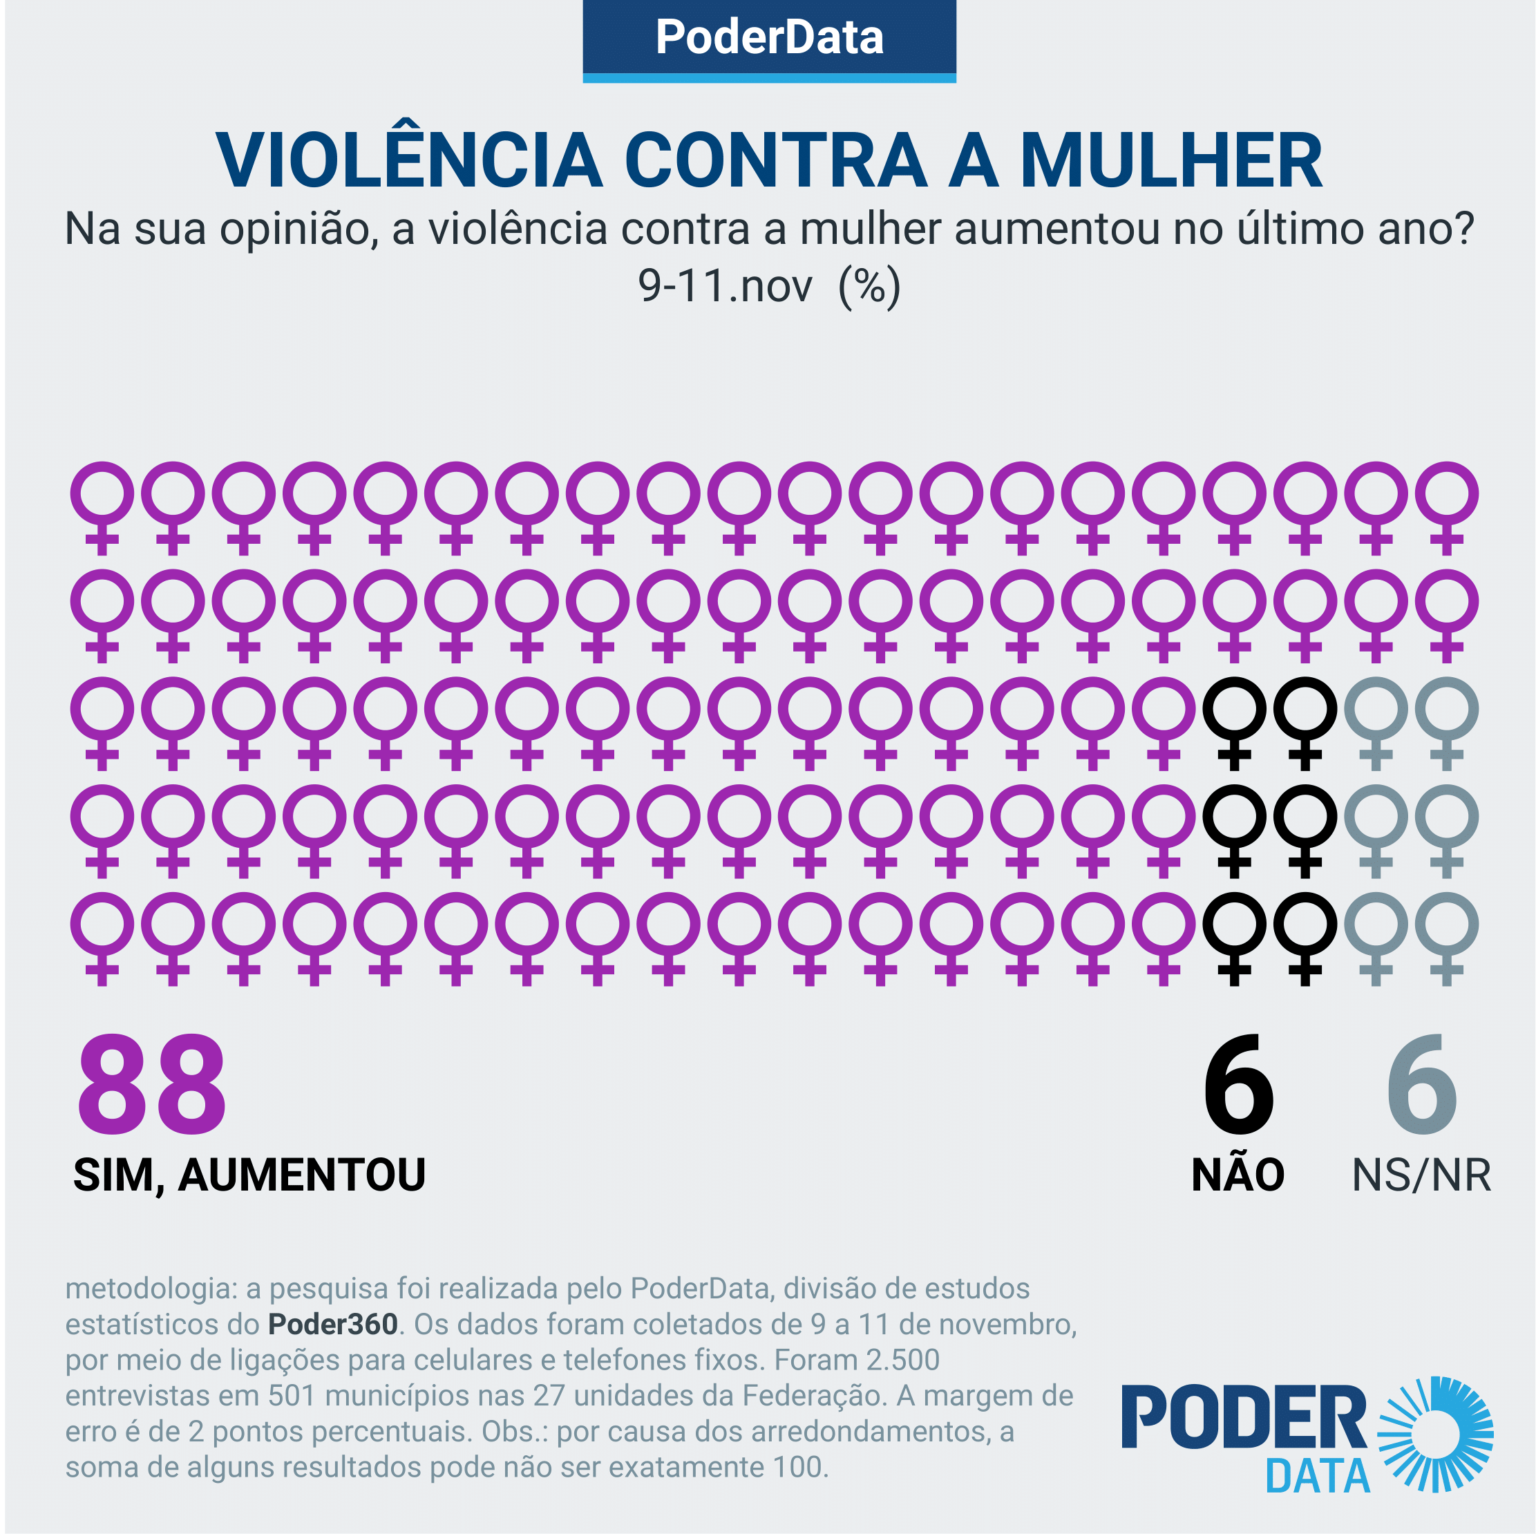 pd-violencia-mulher-11-nov-2020-1-1536×1534